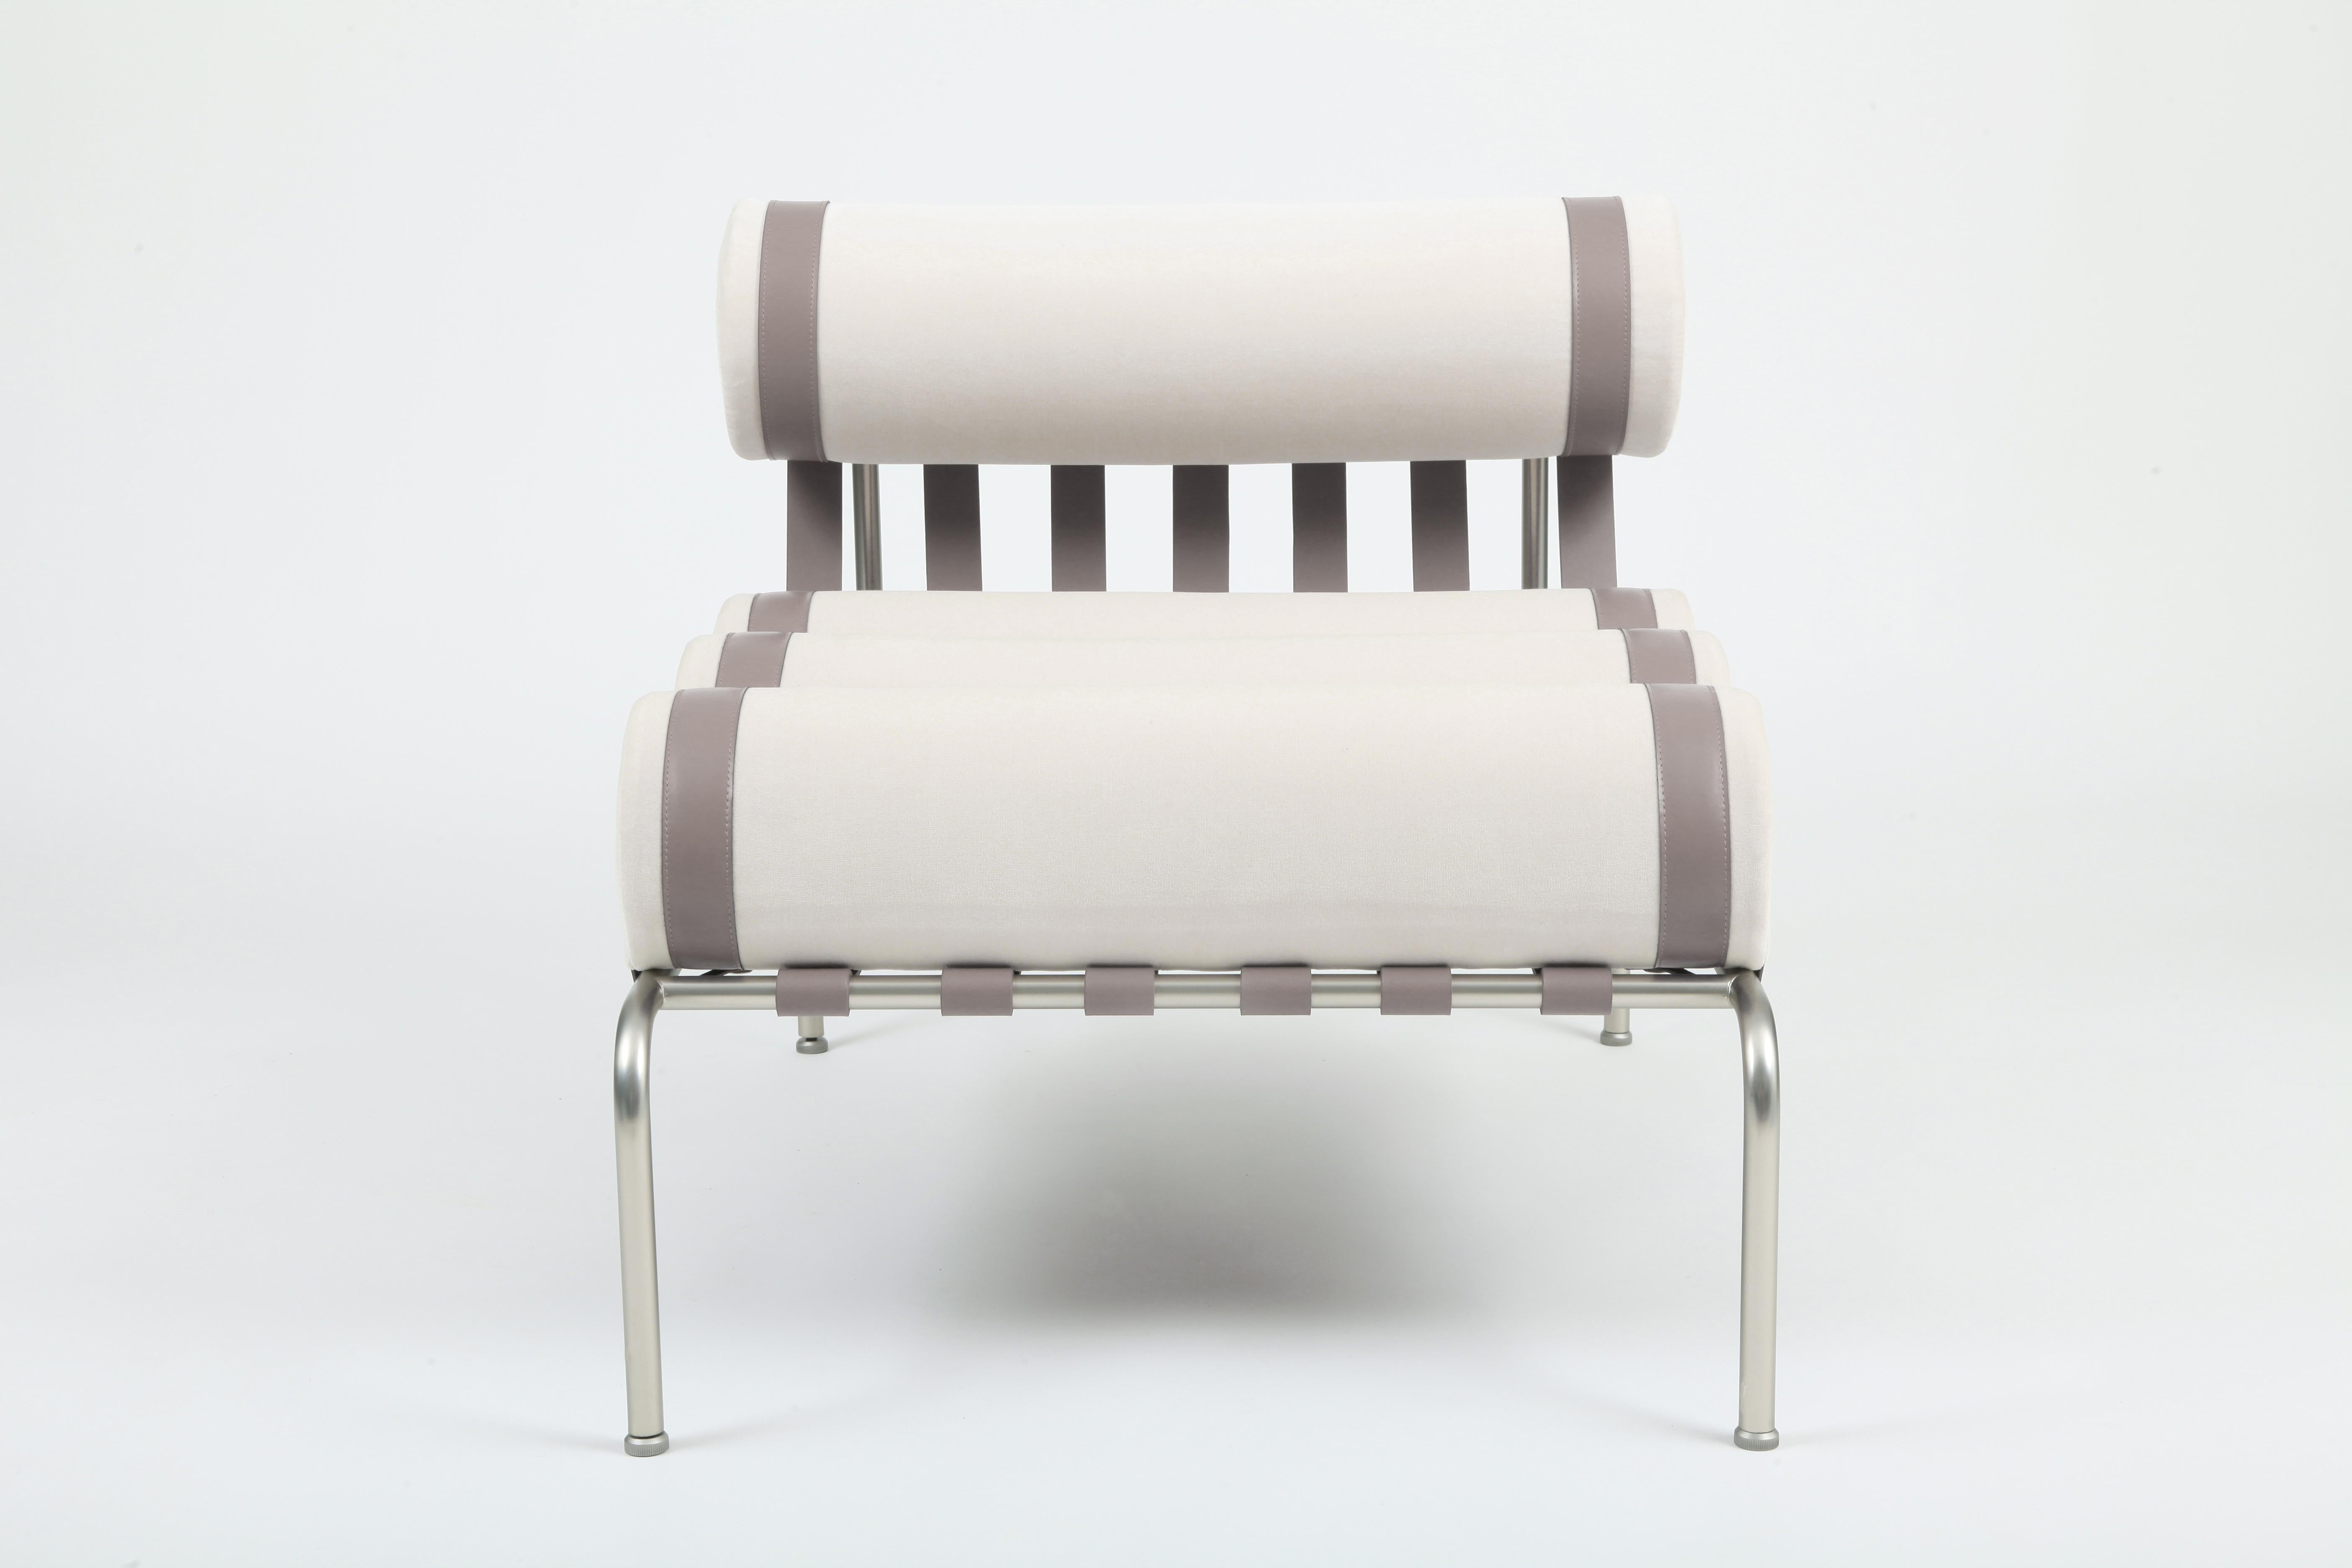 Der Sessel Kylíndo ist ein Lounge-Sessel für den Innenbereich. 
Der niedrige Sitz schafft ein gemütliches und intimes Ambiente. Die feinen Lederbänder sind das Ergebnis eines manuellen Prozesses, der Ästhetik und Halt für die Kissen des